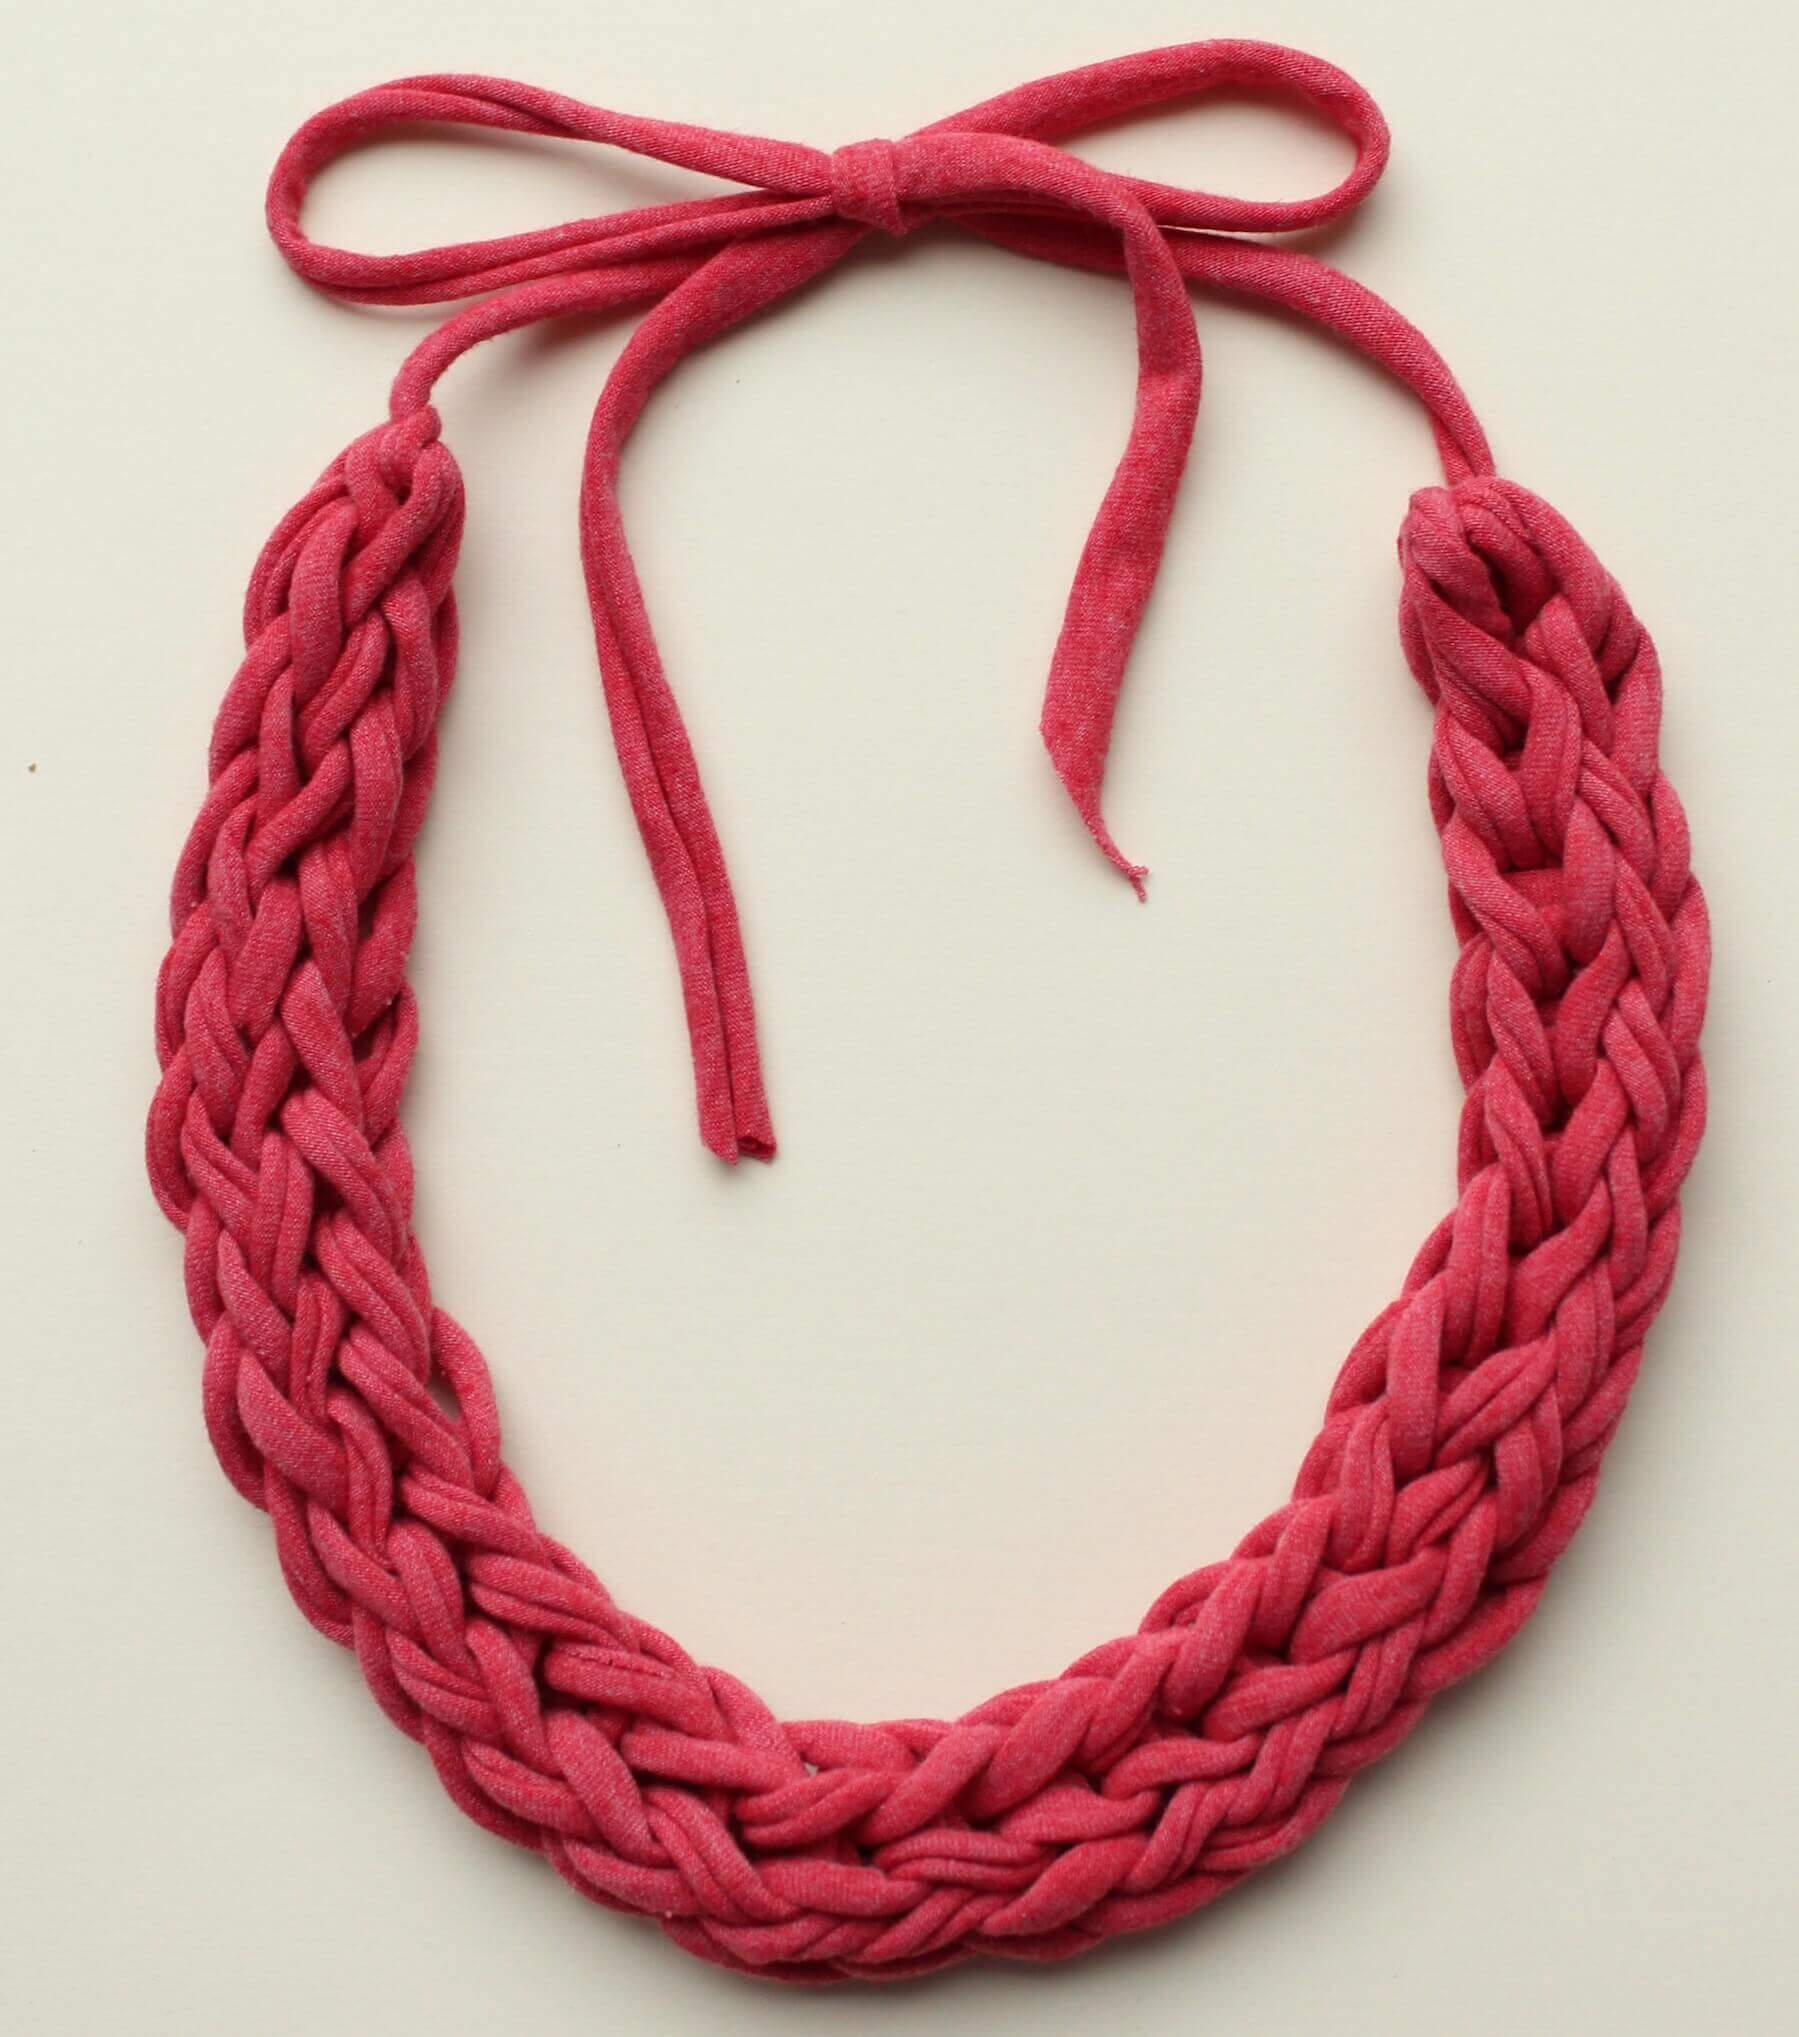 Knitting jewelry